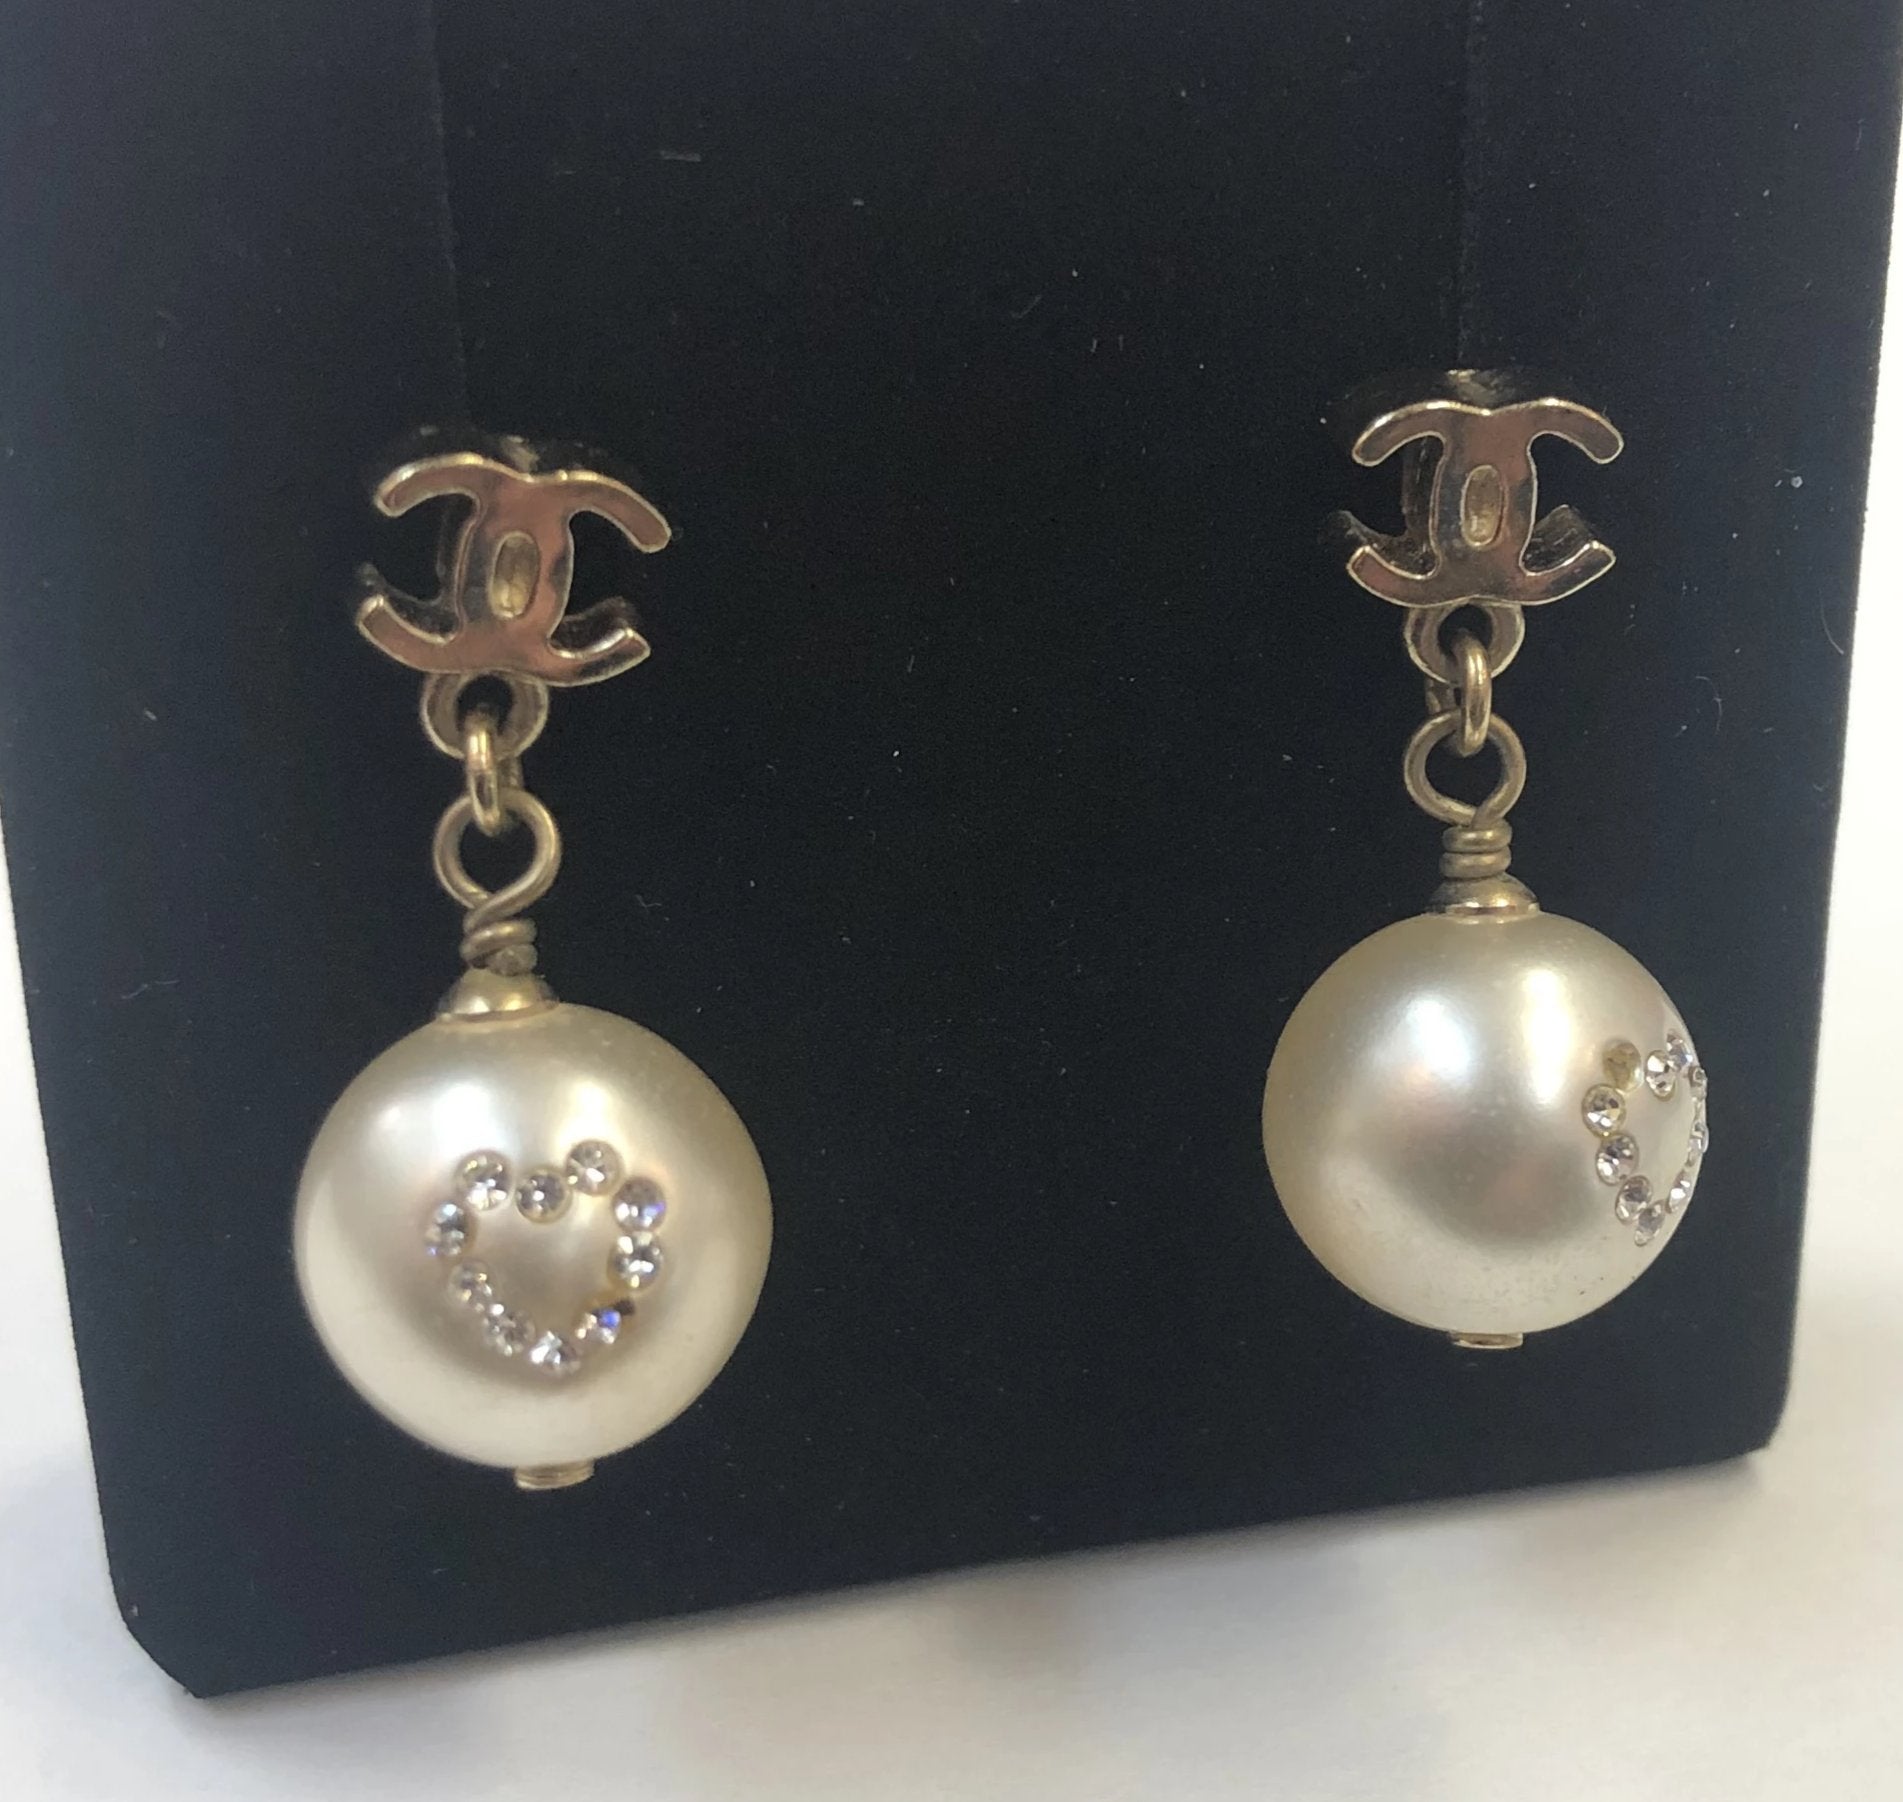 CHANEL Pearl Drop Earrings – The Luxury Label Nashville